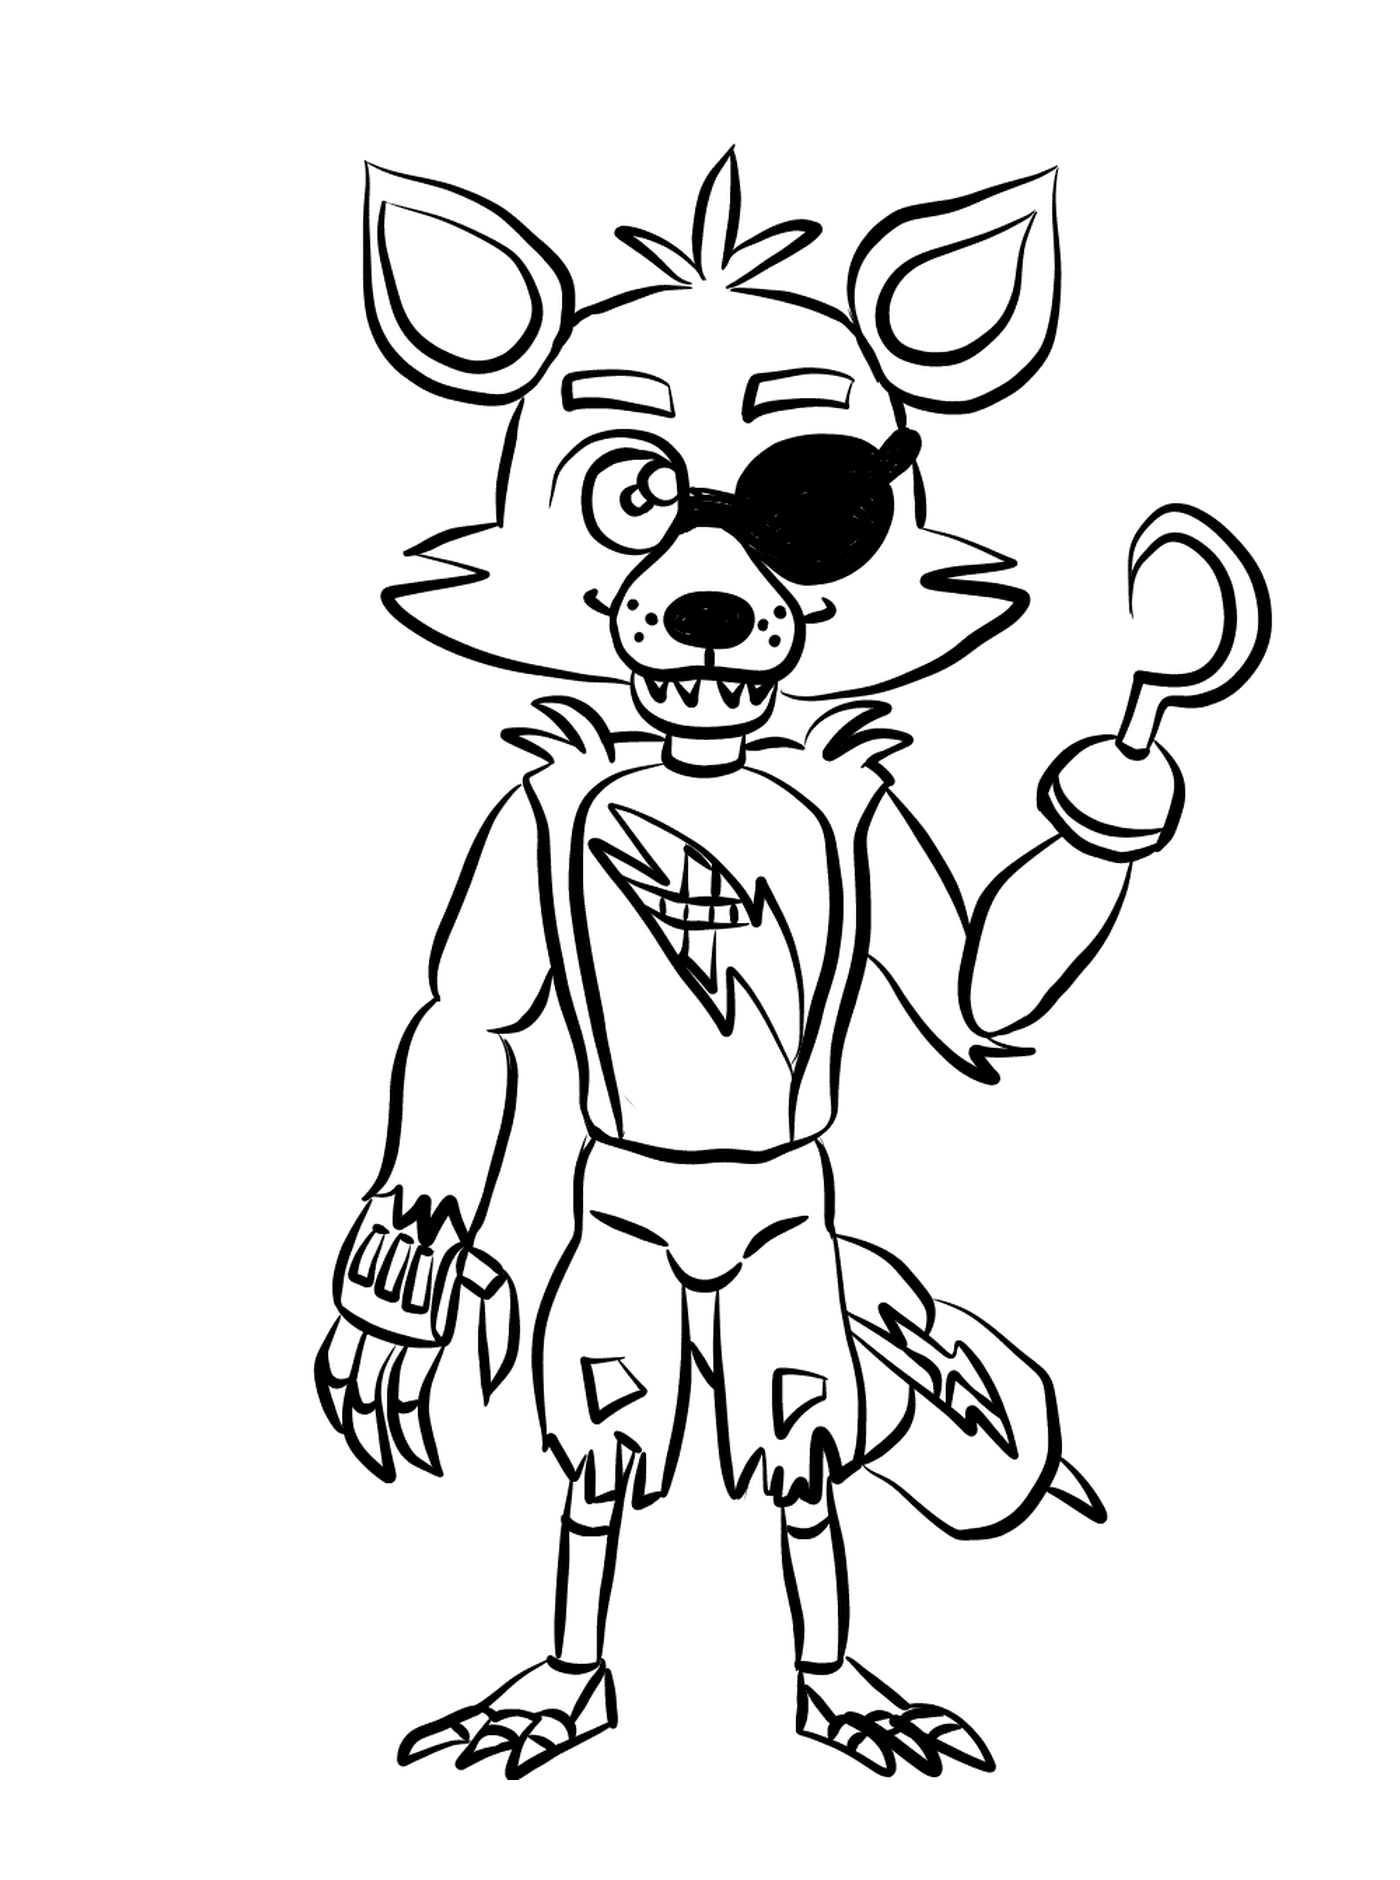  Un personaje de dibujos animados que representa a Foxy 